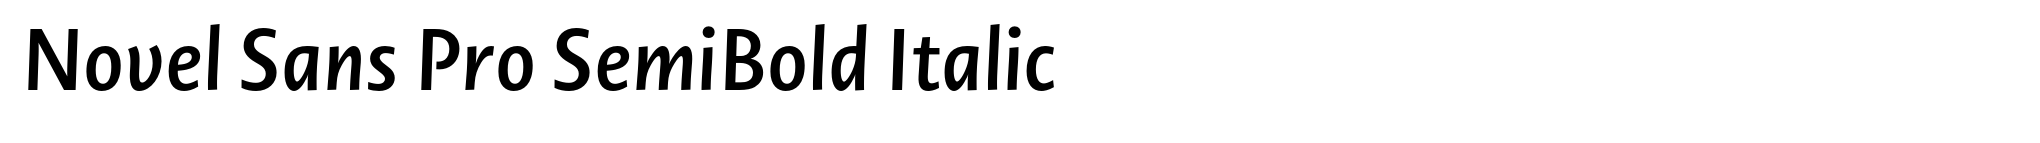 Novel Sans Pro SemiBold Italic image